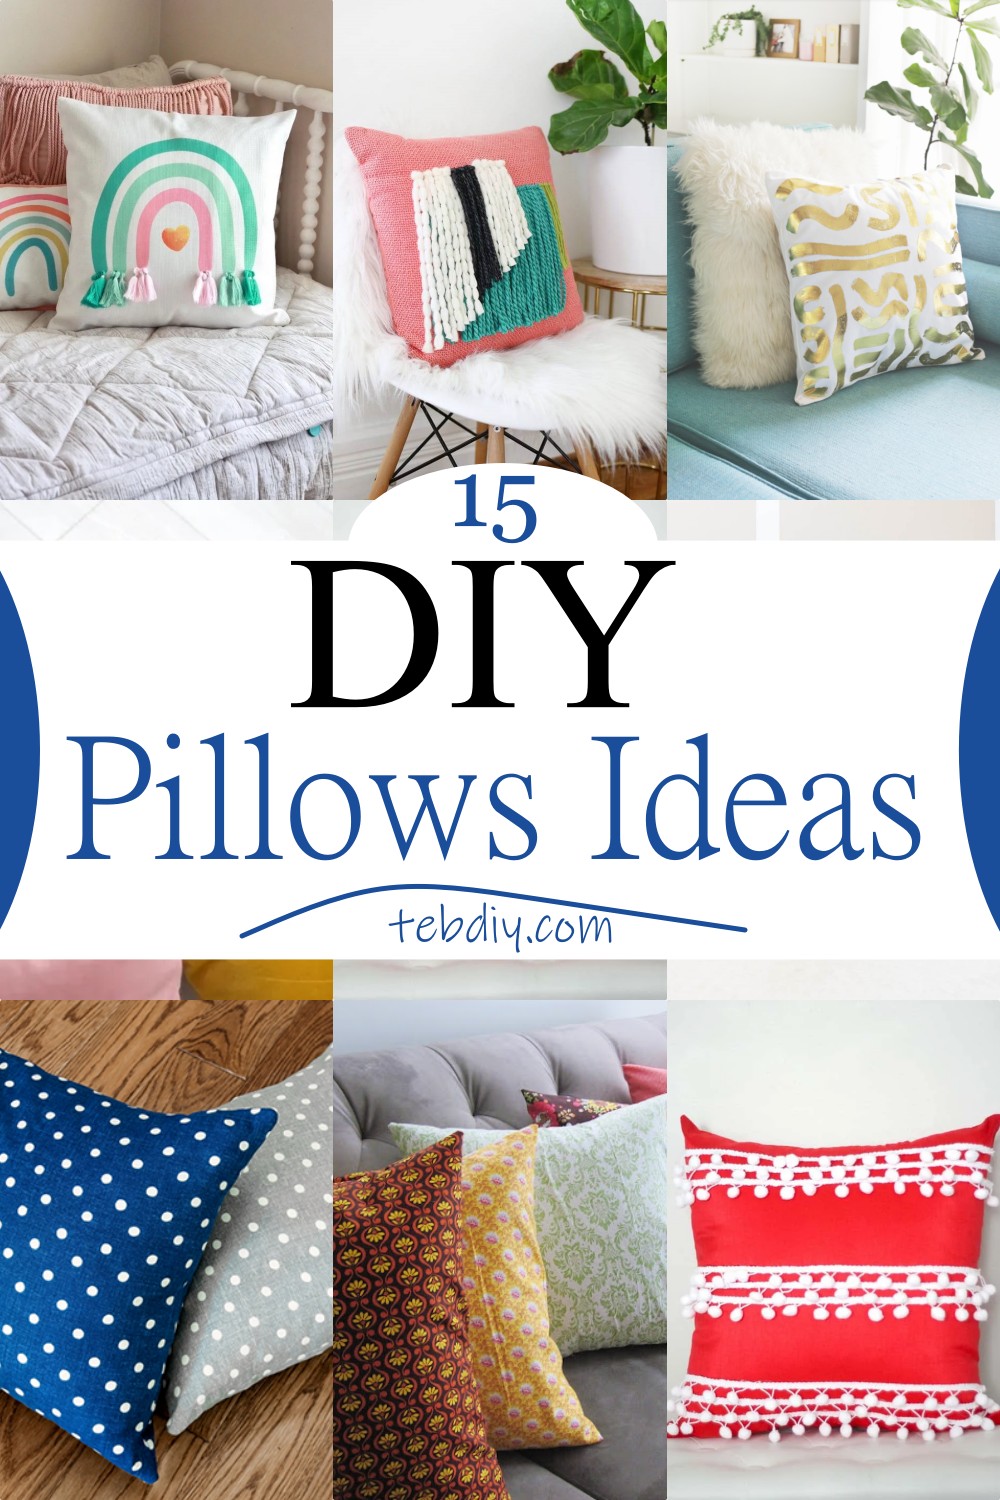 15 DIY Pillows Ideas